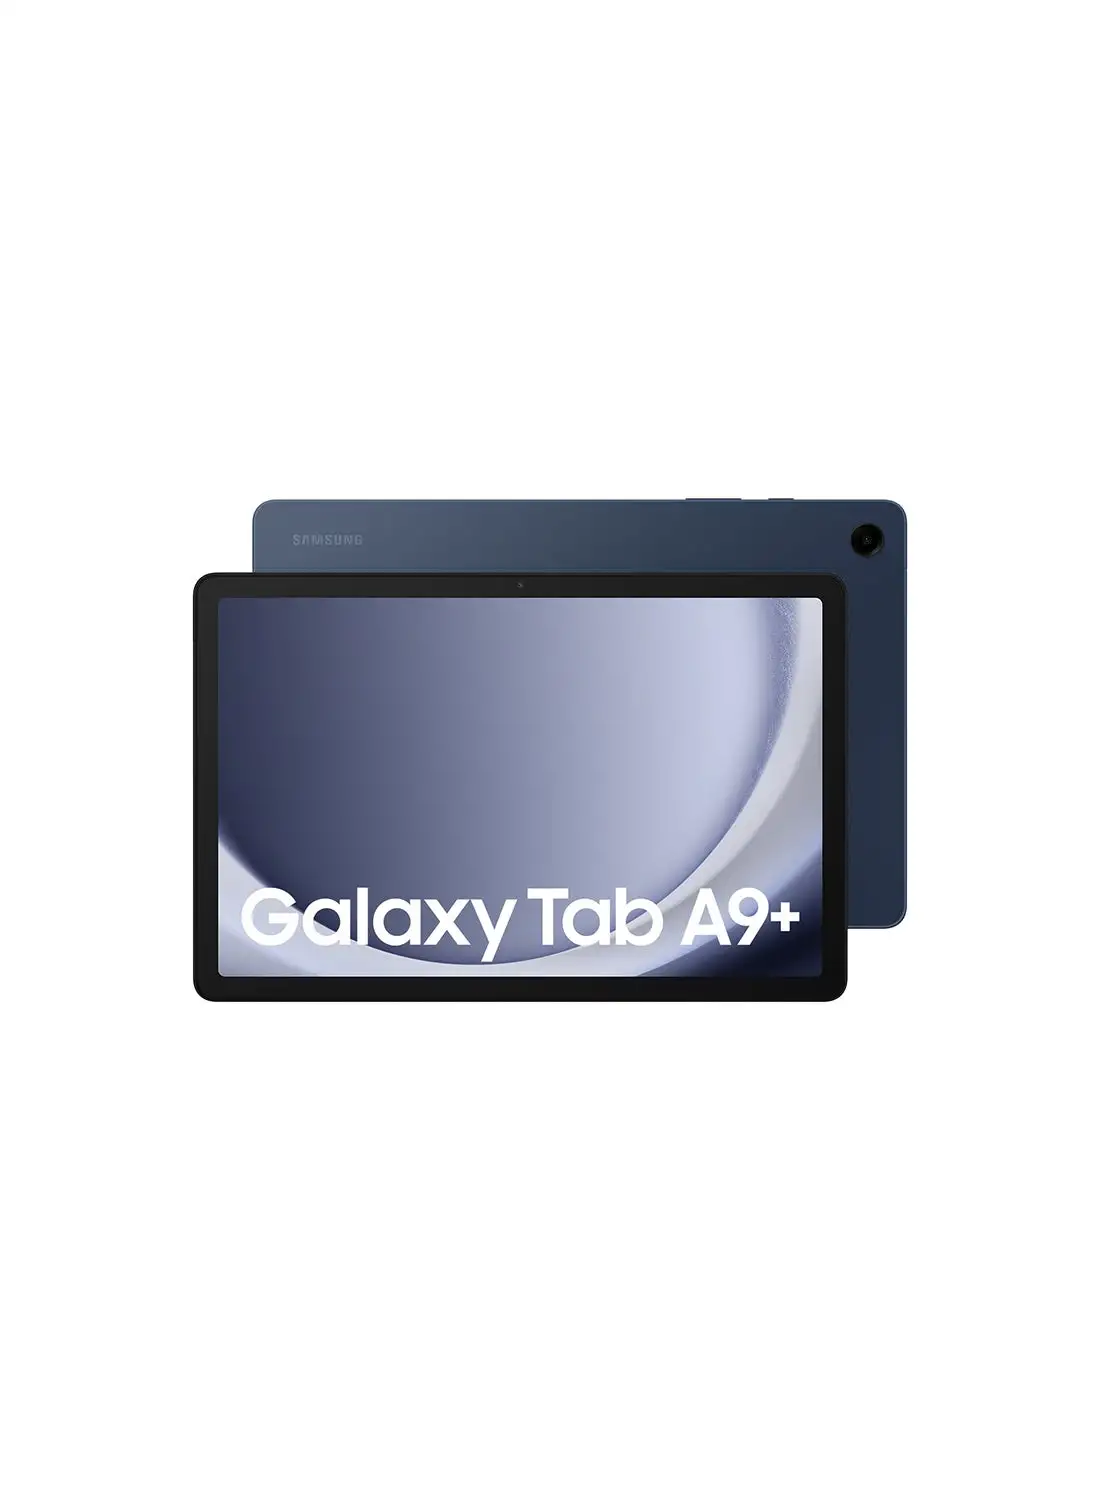 Samsung Galaxy Tab A9 Plus Navy 4GB RAM 64GB 5G - Middle East Version